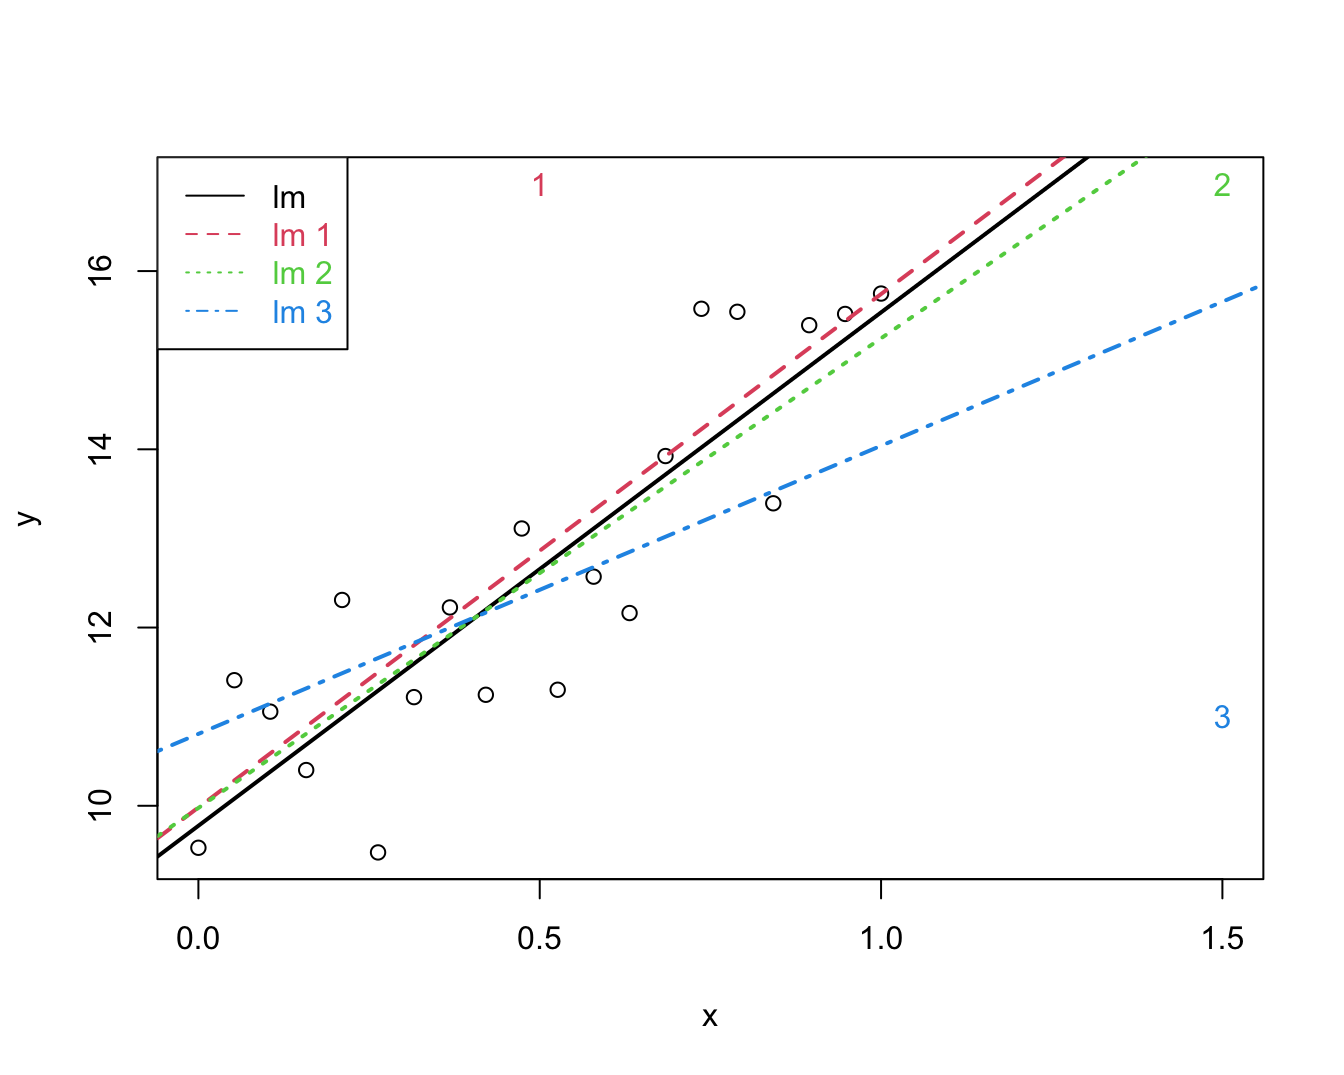 Impact van outliers op de regressie. Regressie zonder outliers (zwart), regressie met outlier 1 (groen), regressie met outlier 2 (rood), regressie met outlier 3 (blauw).